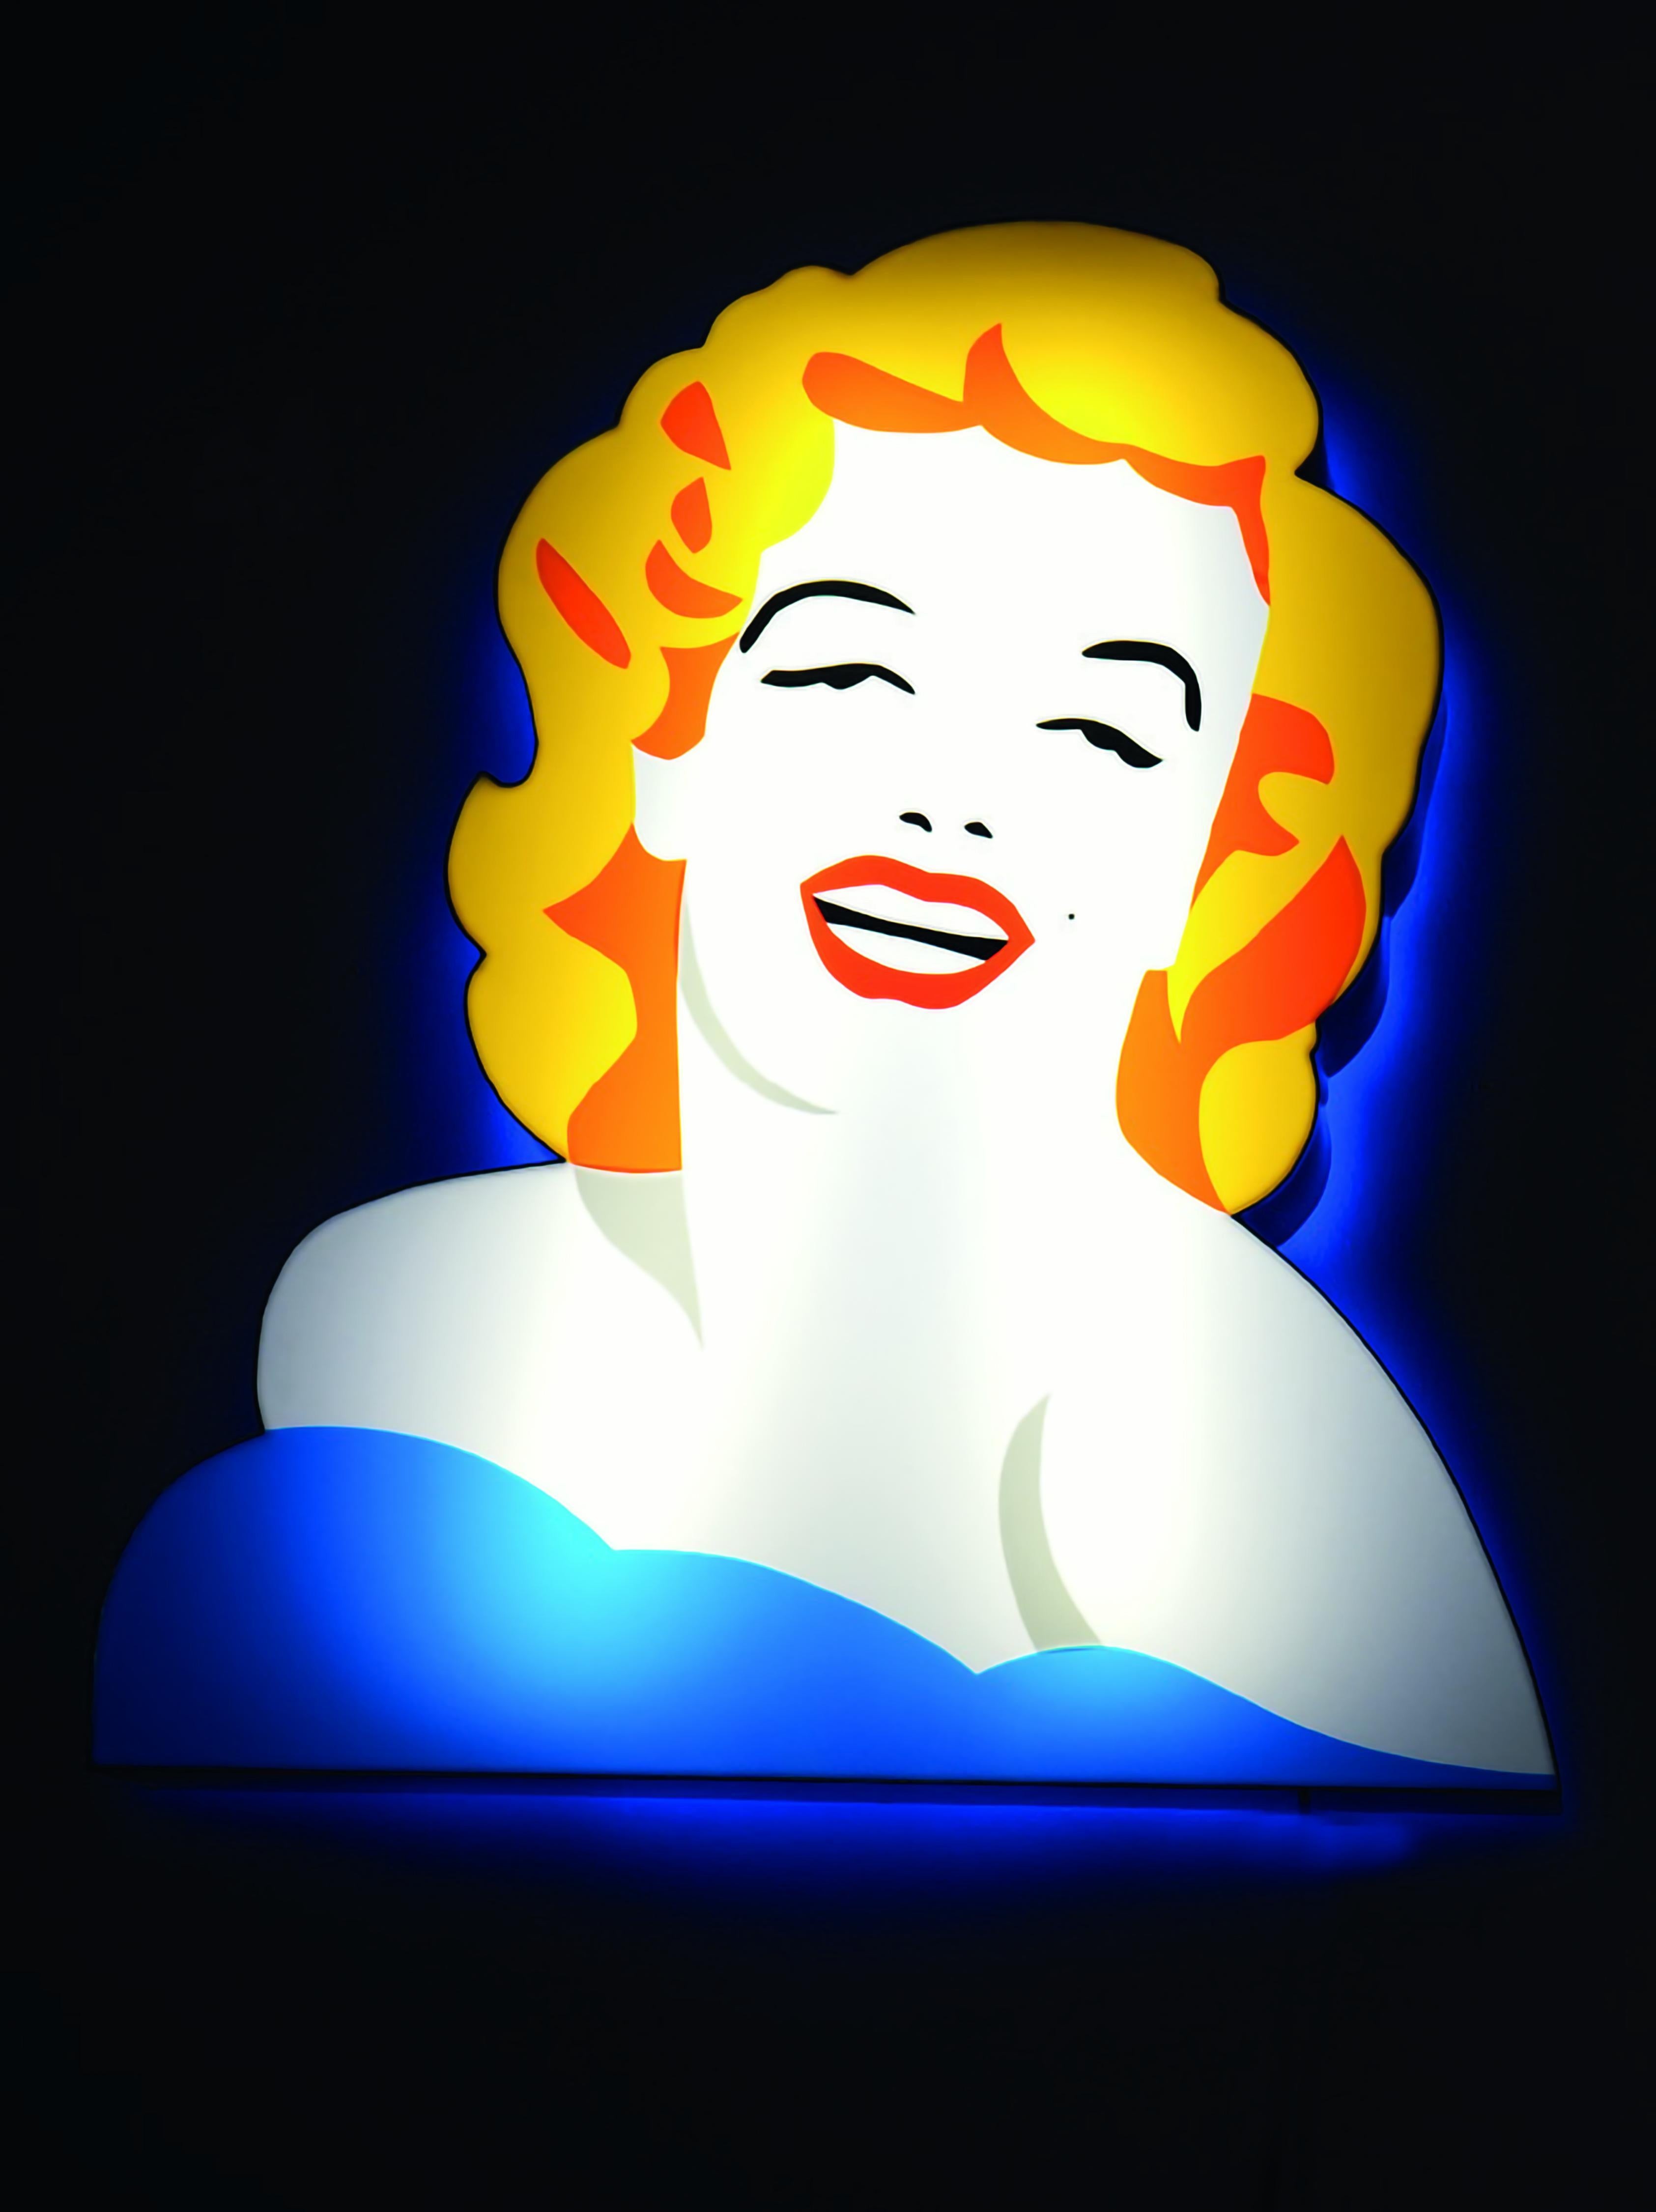 Sculpture lumineuse
Plaque acrylique incurvée, éclairage par tubes lumineux
